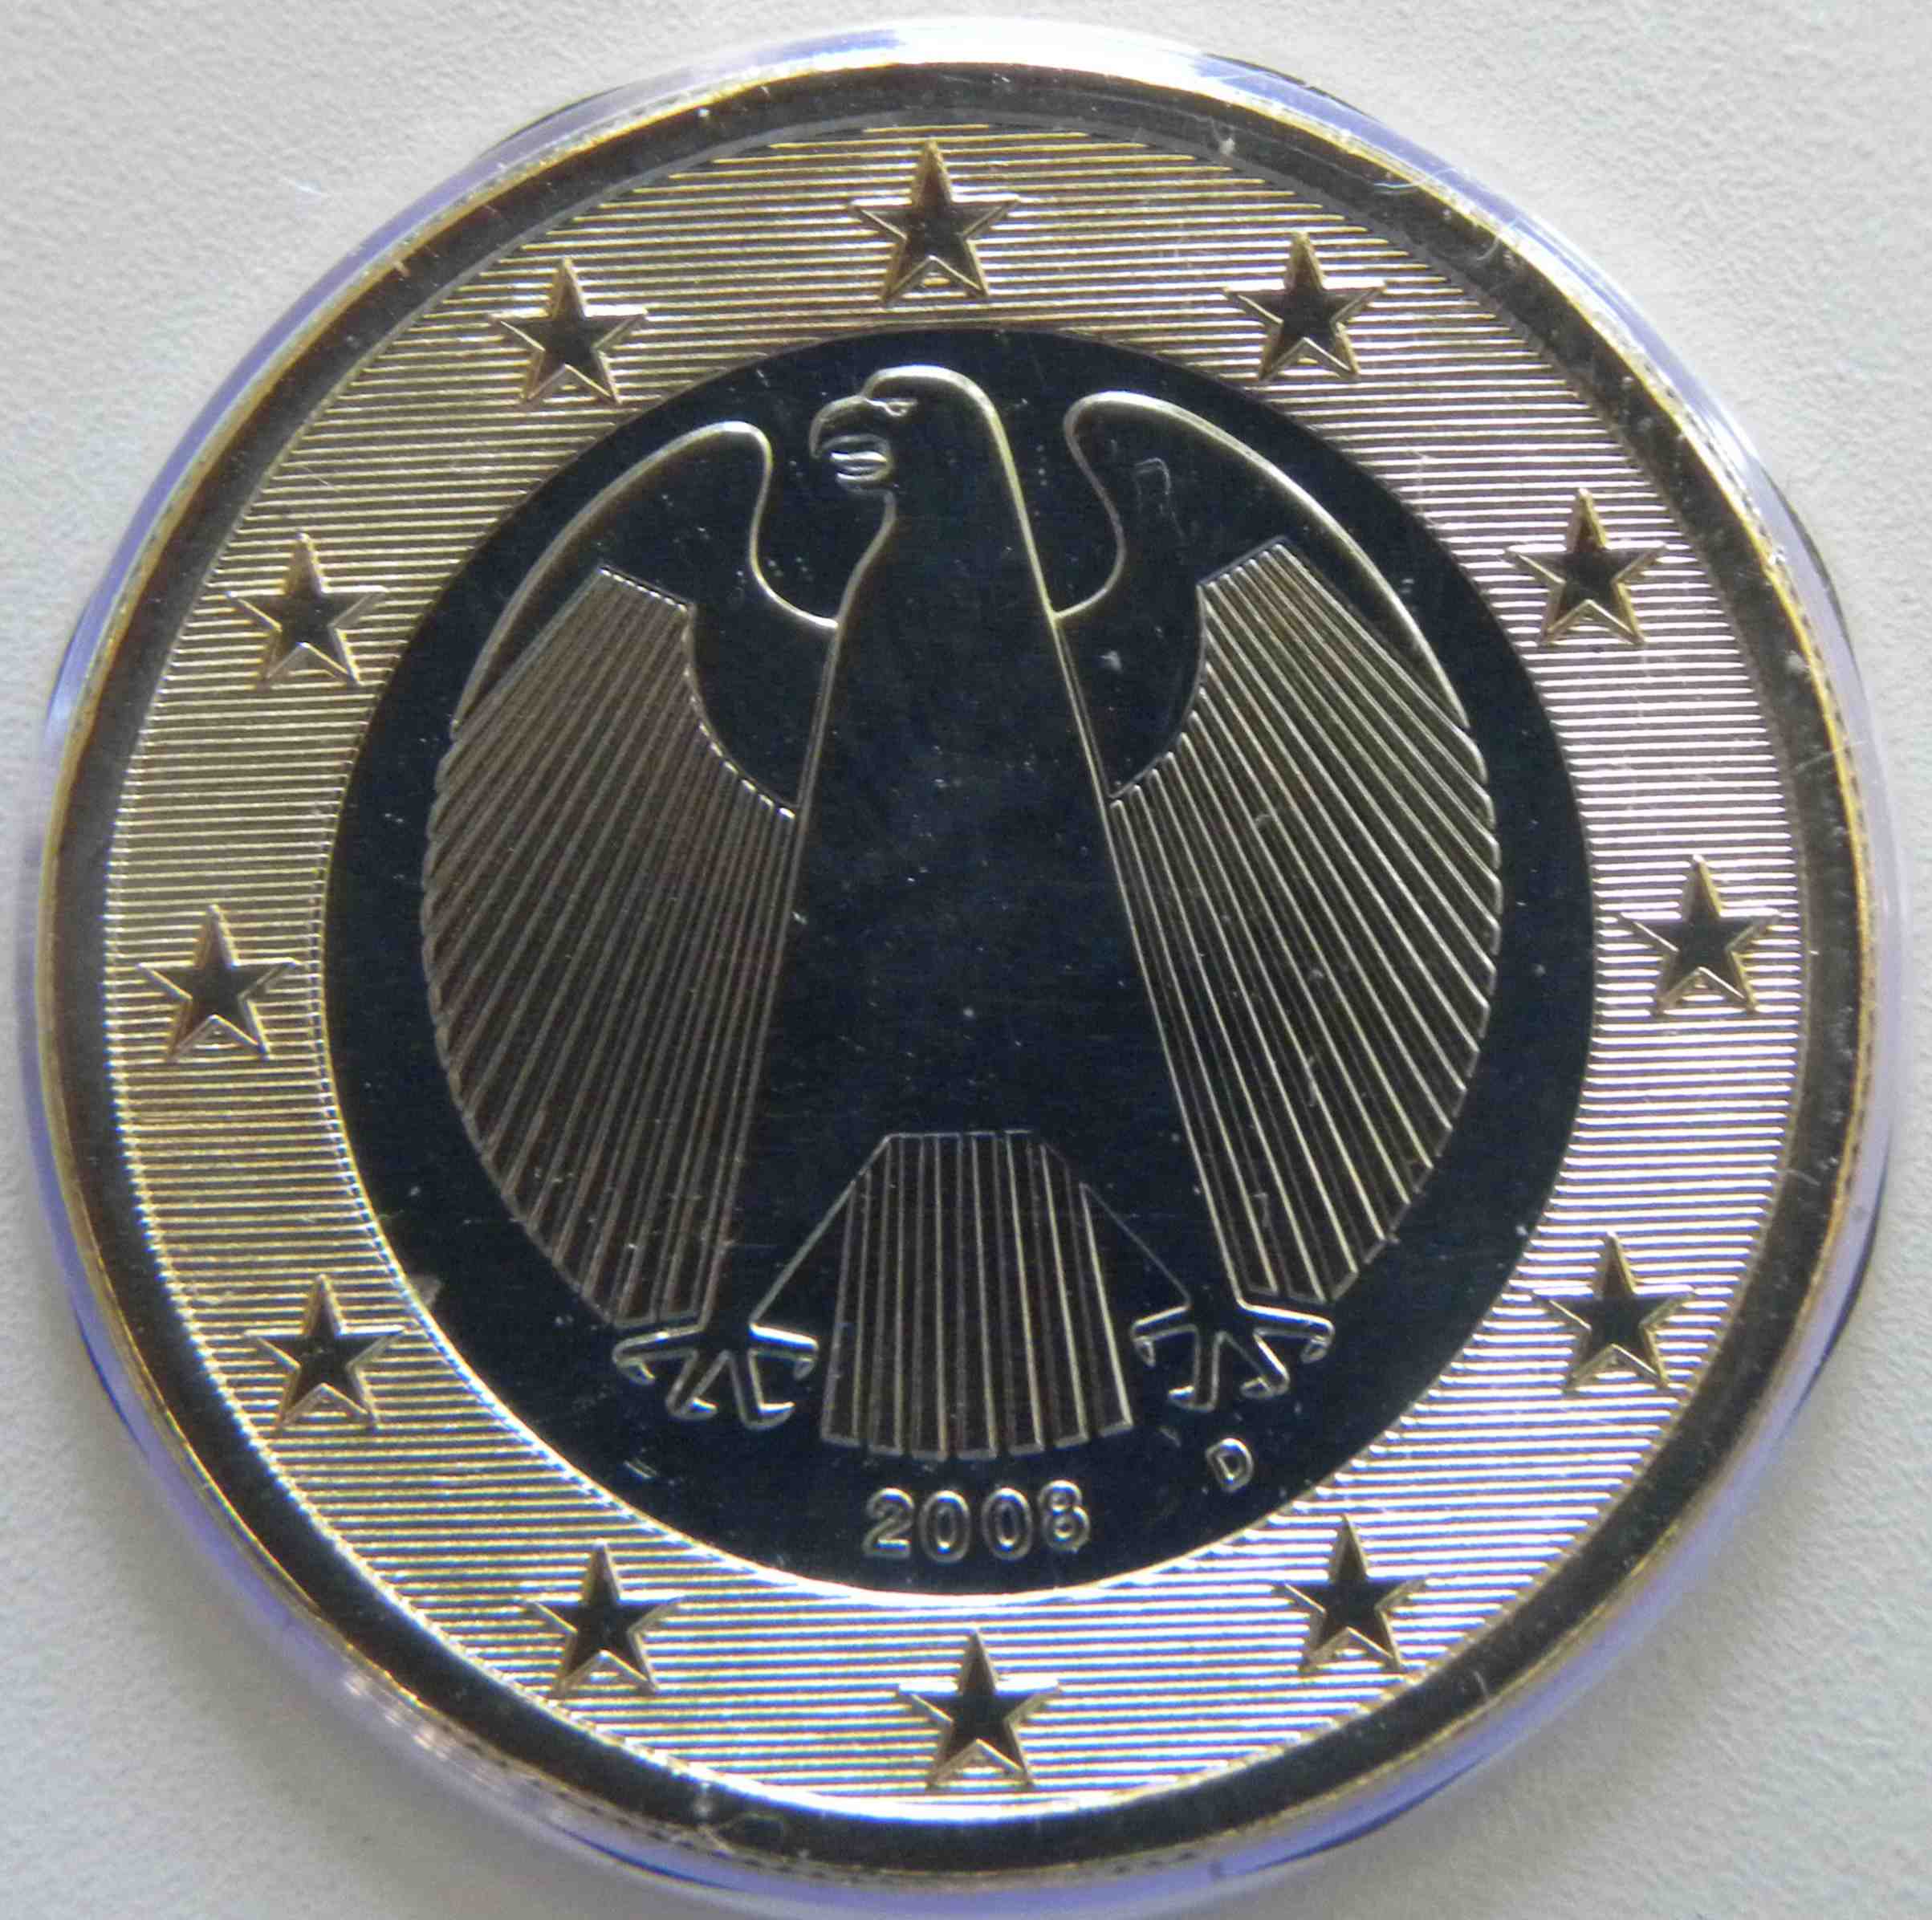 Deutschland 1 Euro Münze 2008 D - euro-muenzen.tv - Der Online